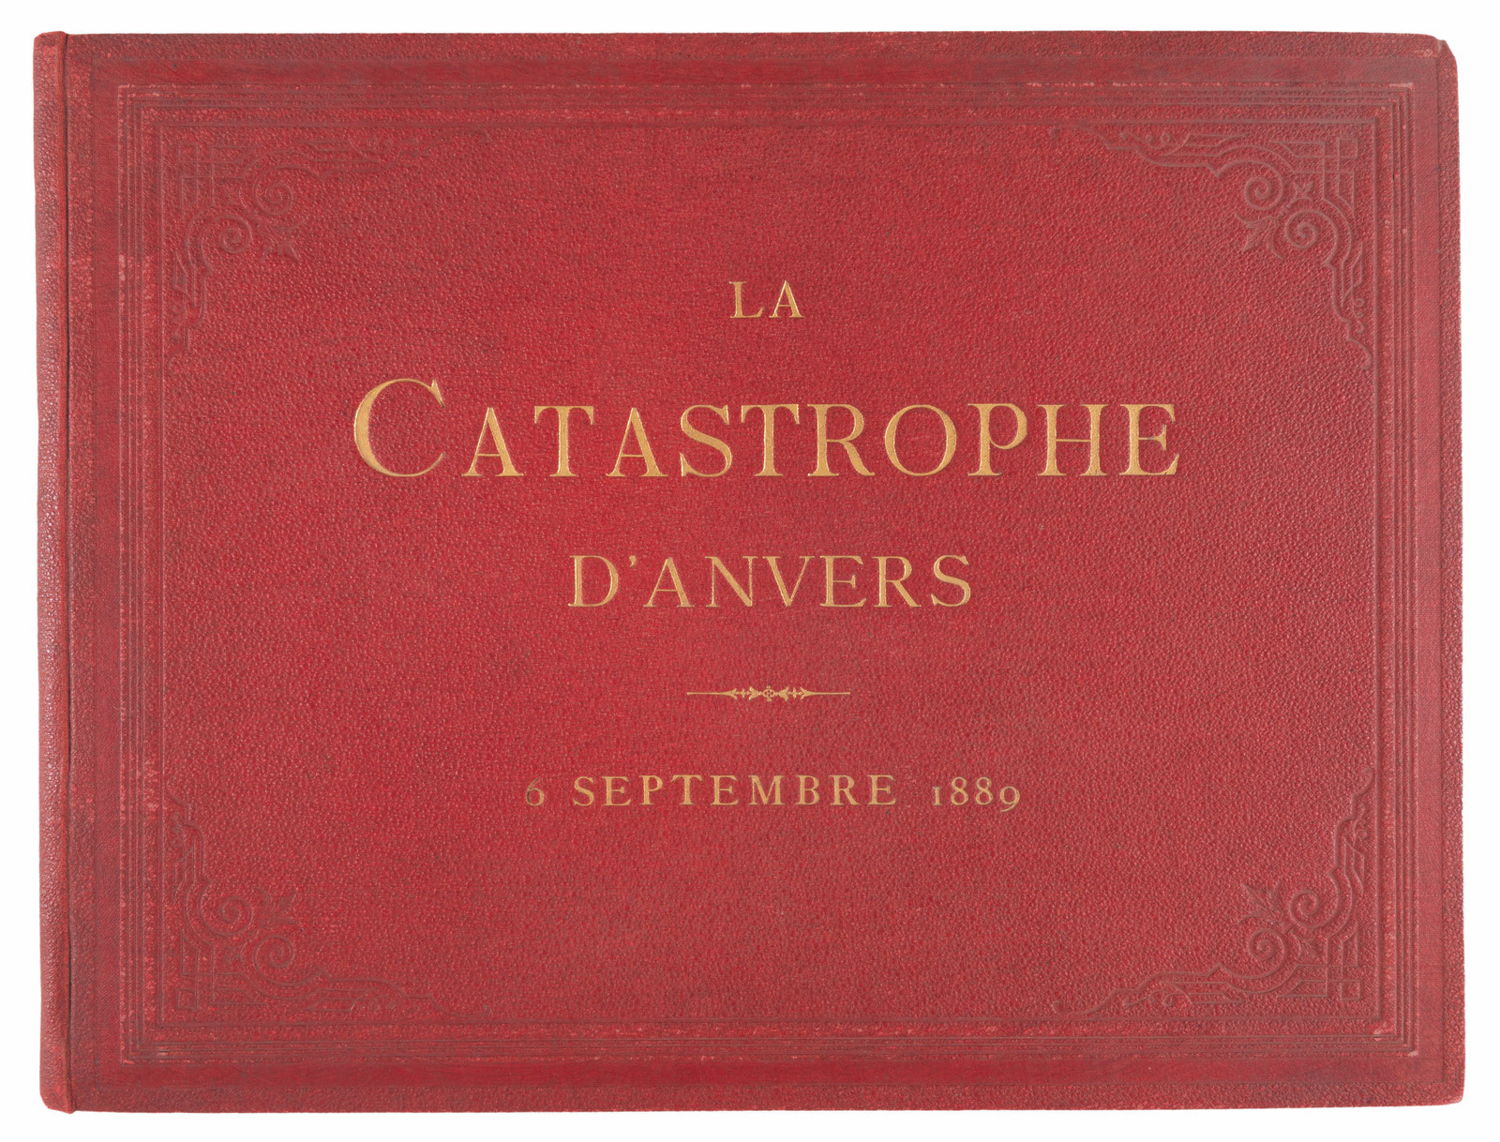 La Catastrophe d’Anvers. 6 septembre 1889. Album contenant 18 planches. Au profit des victimes, Jos. Maes, Antwerp, 1889.
